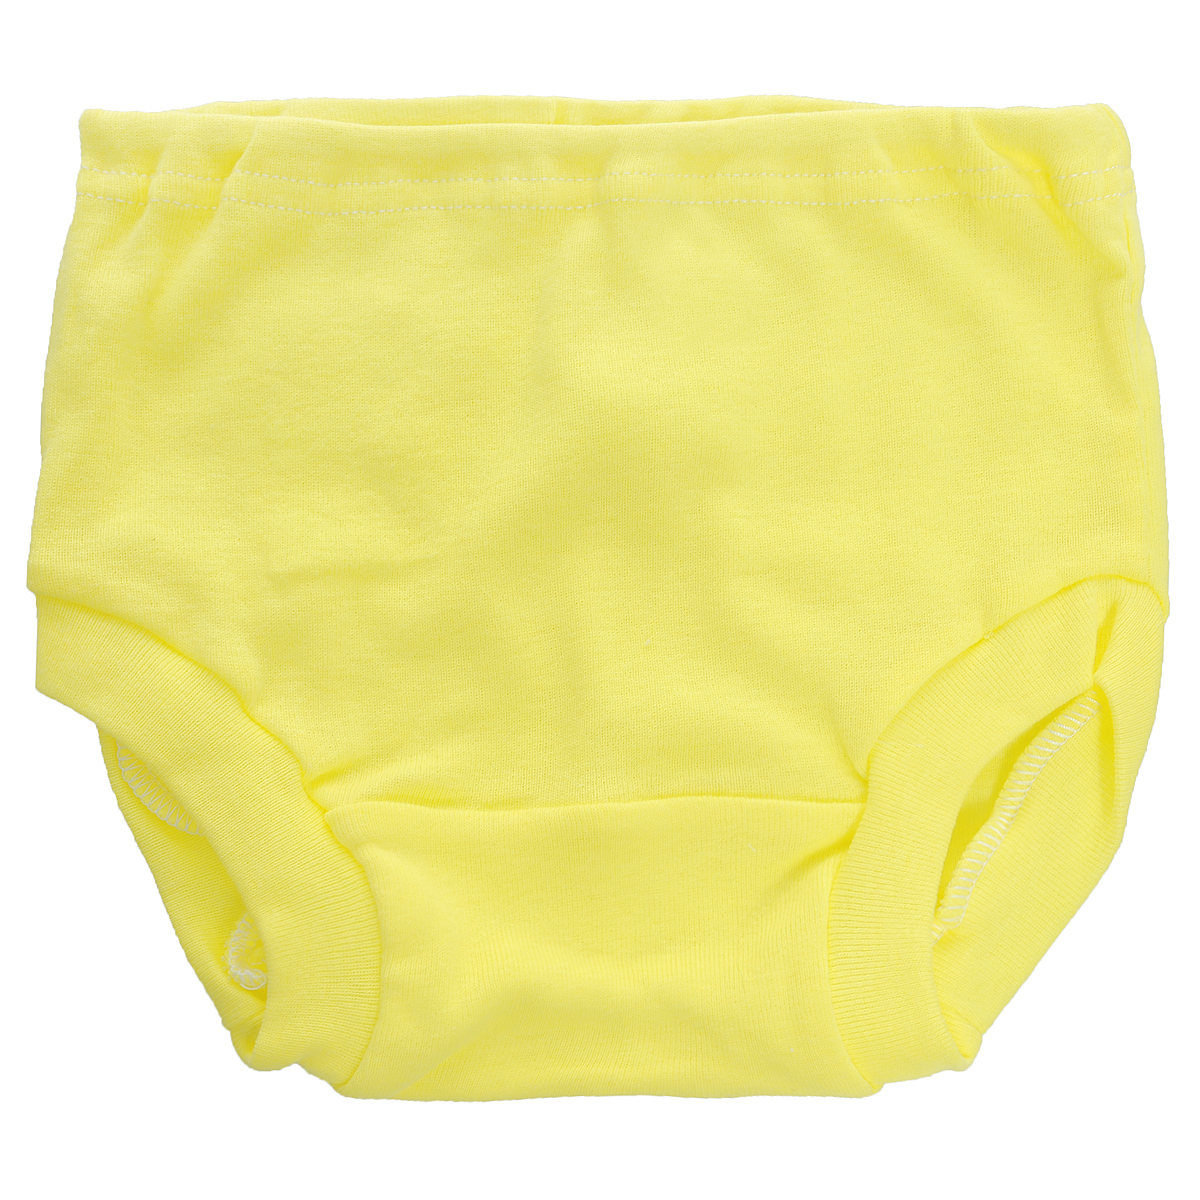 Трусы детские Трон-плюс, цвет: желтый. 8220. Размер 68, 6 месяцев